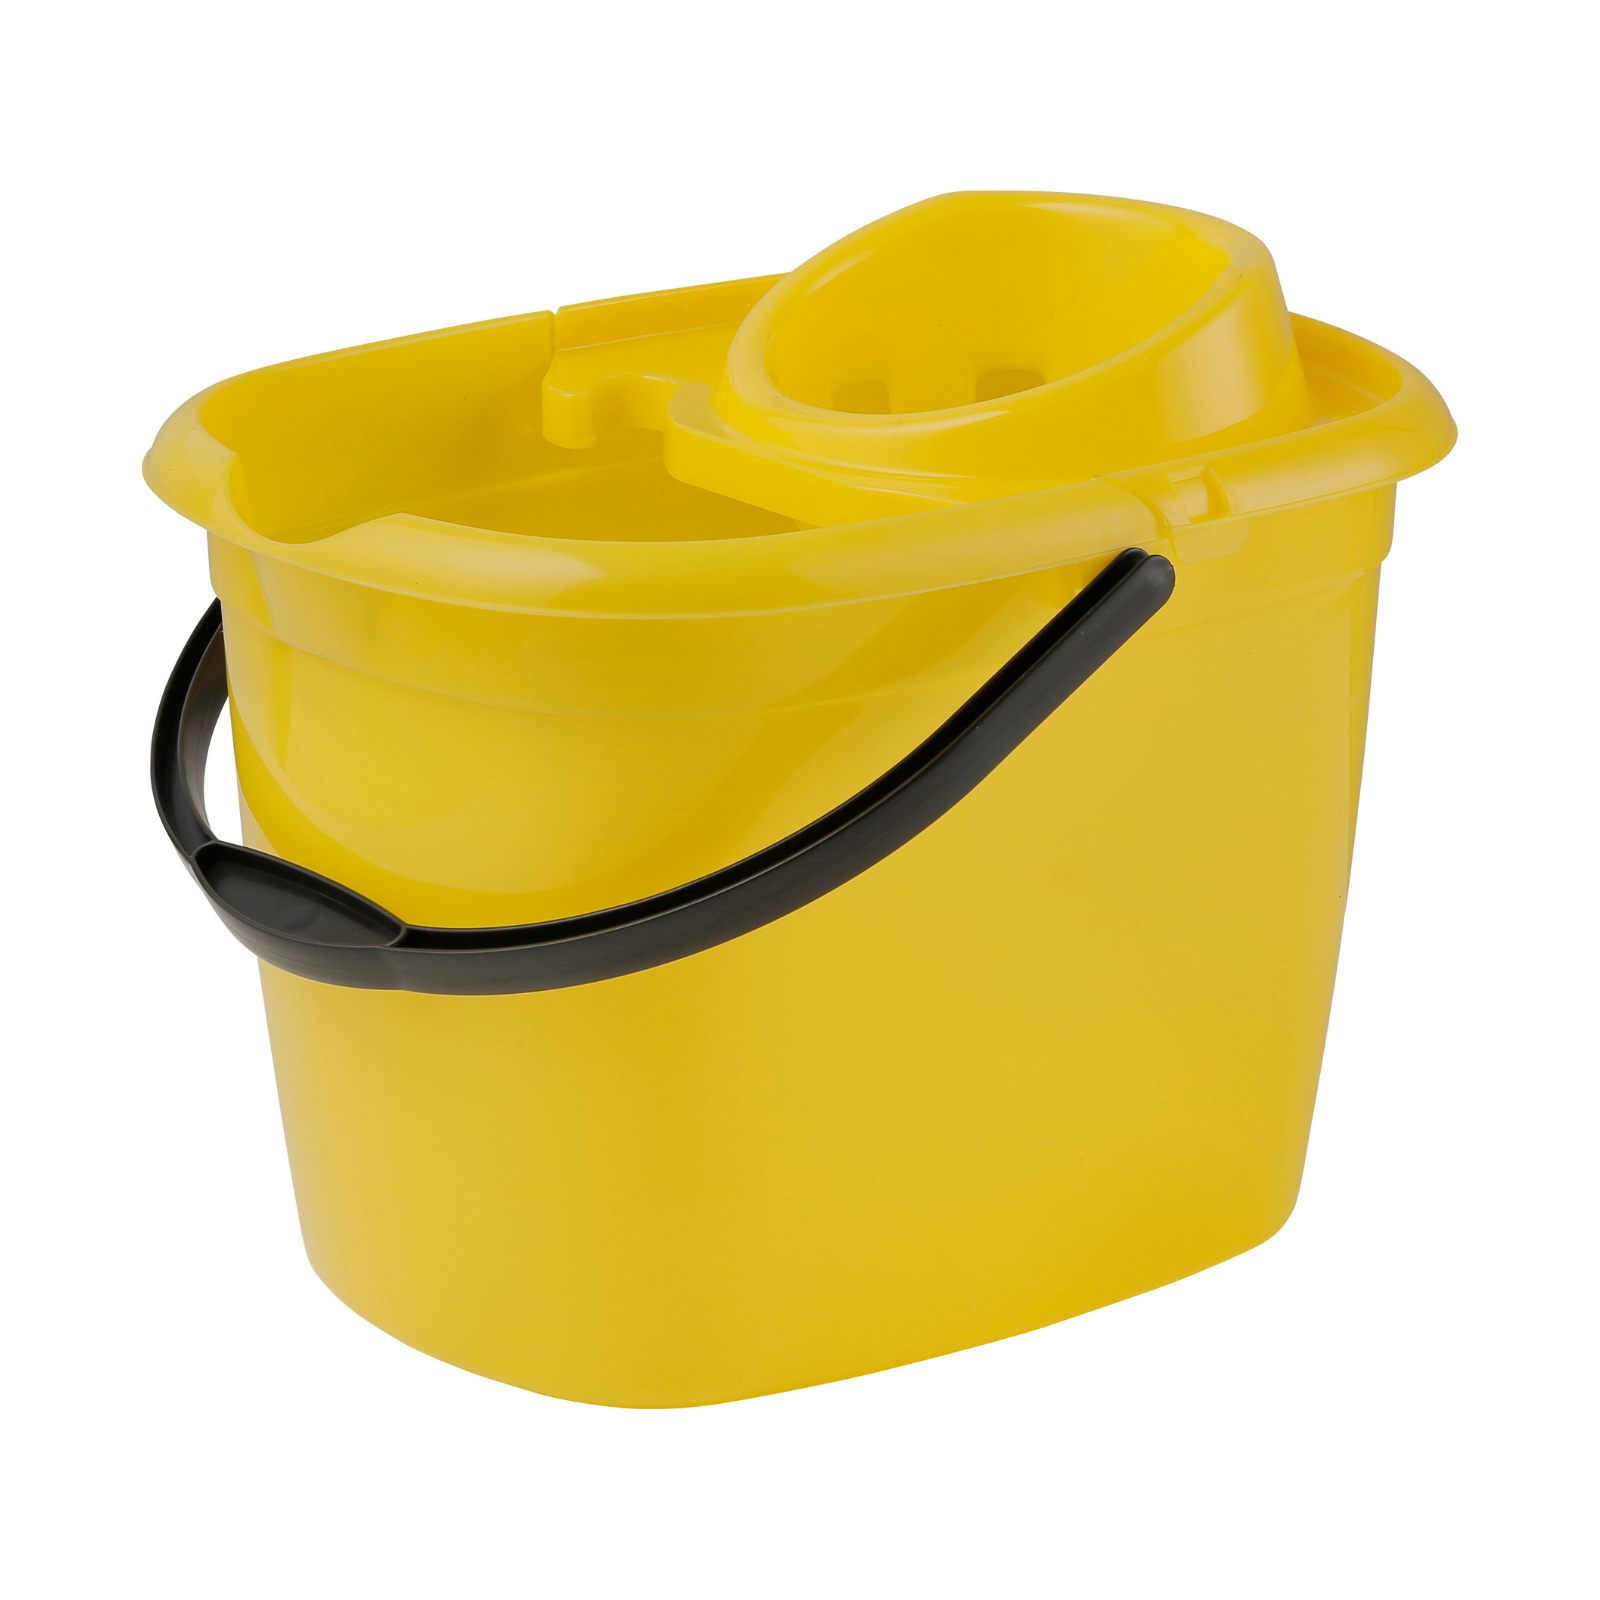 14 Ltr Standard Mop Bucket - Yellow